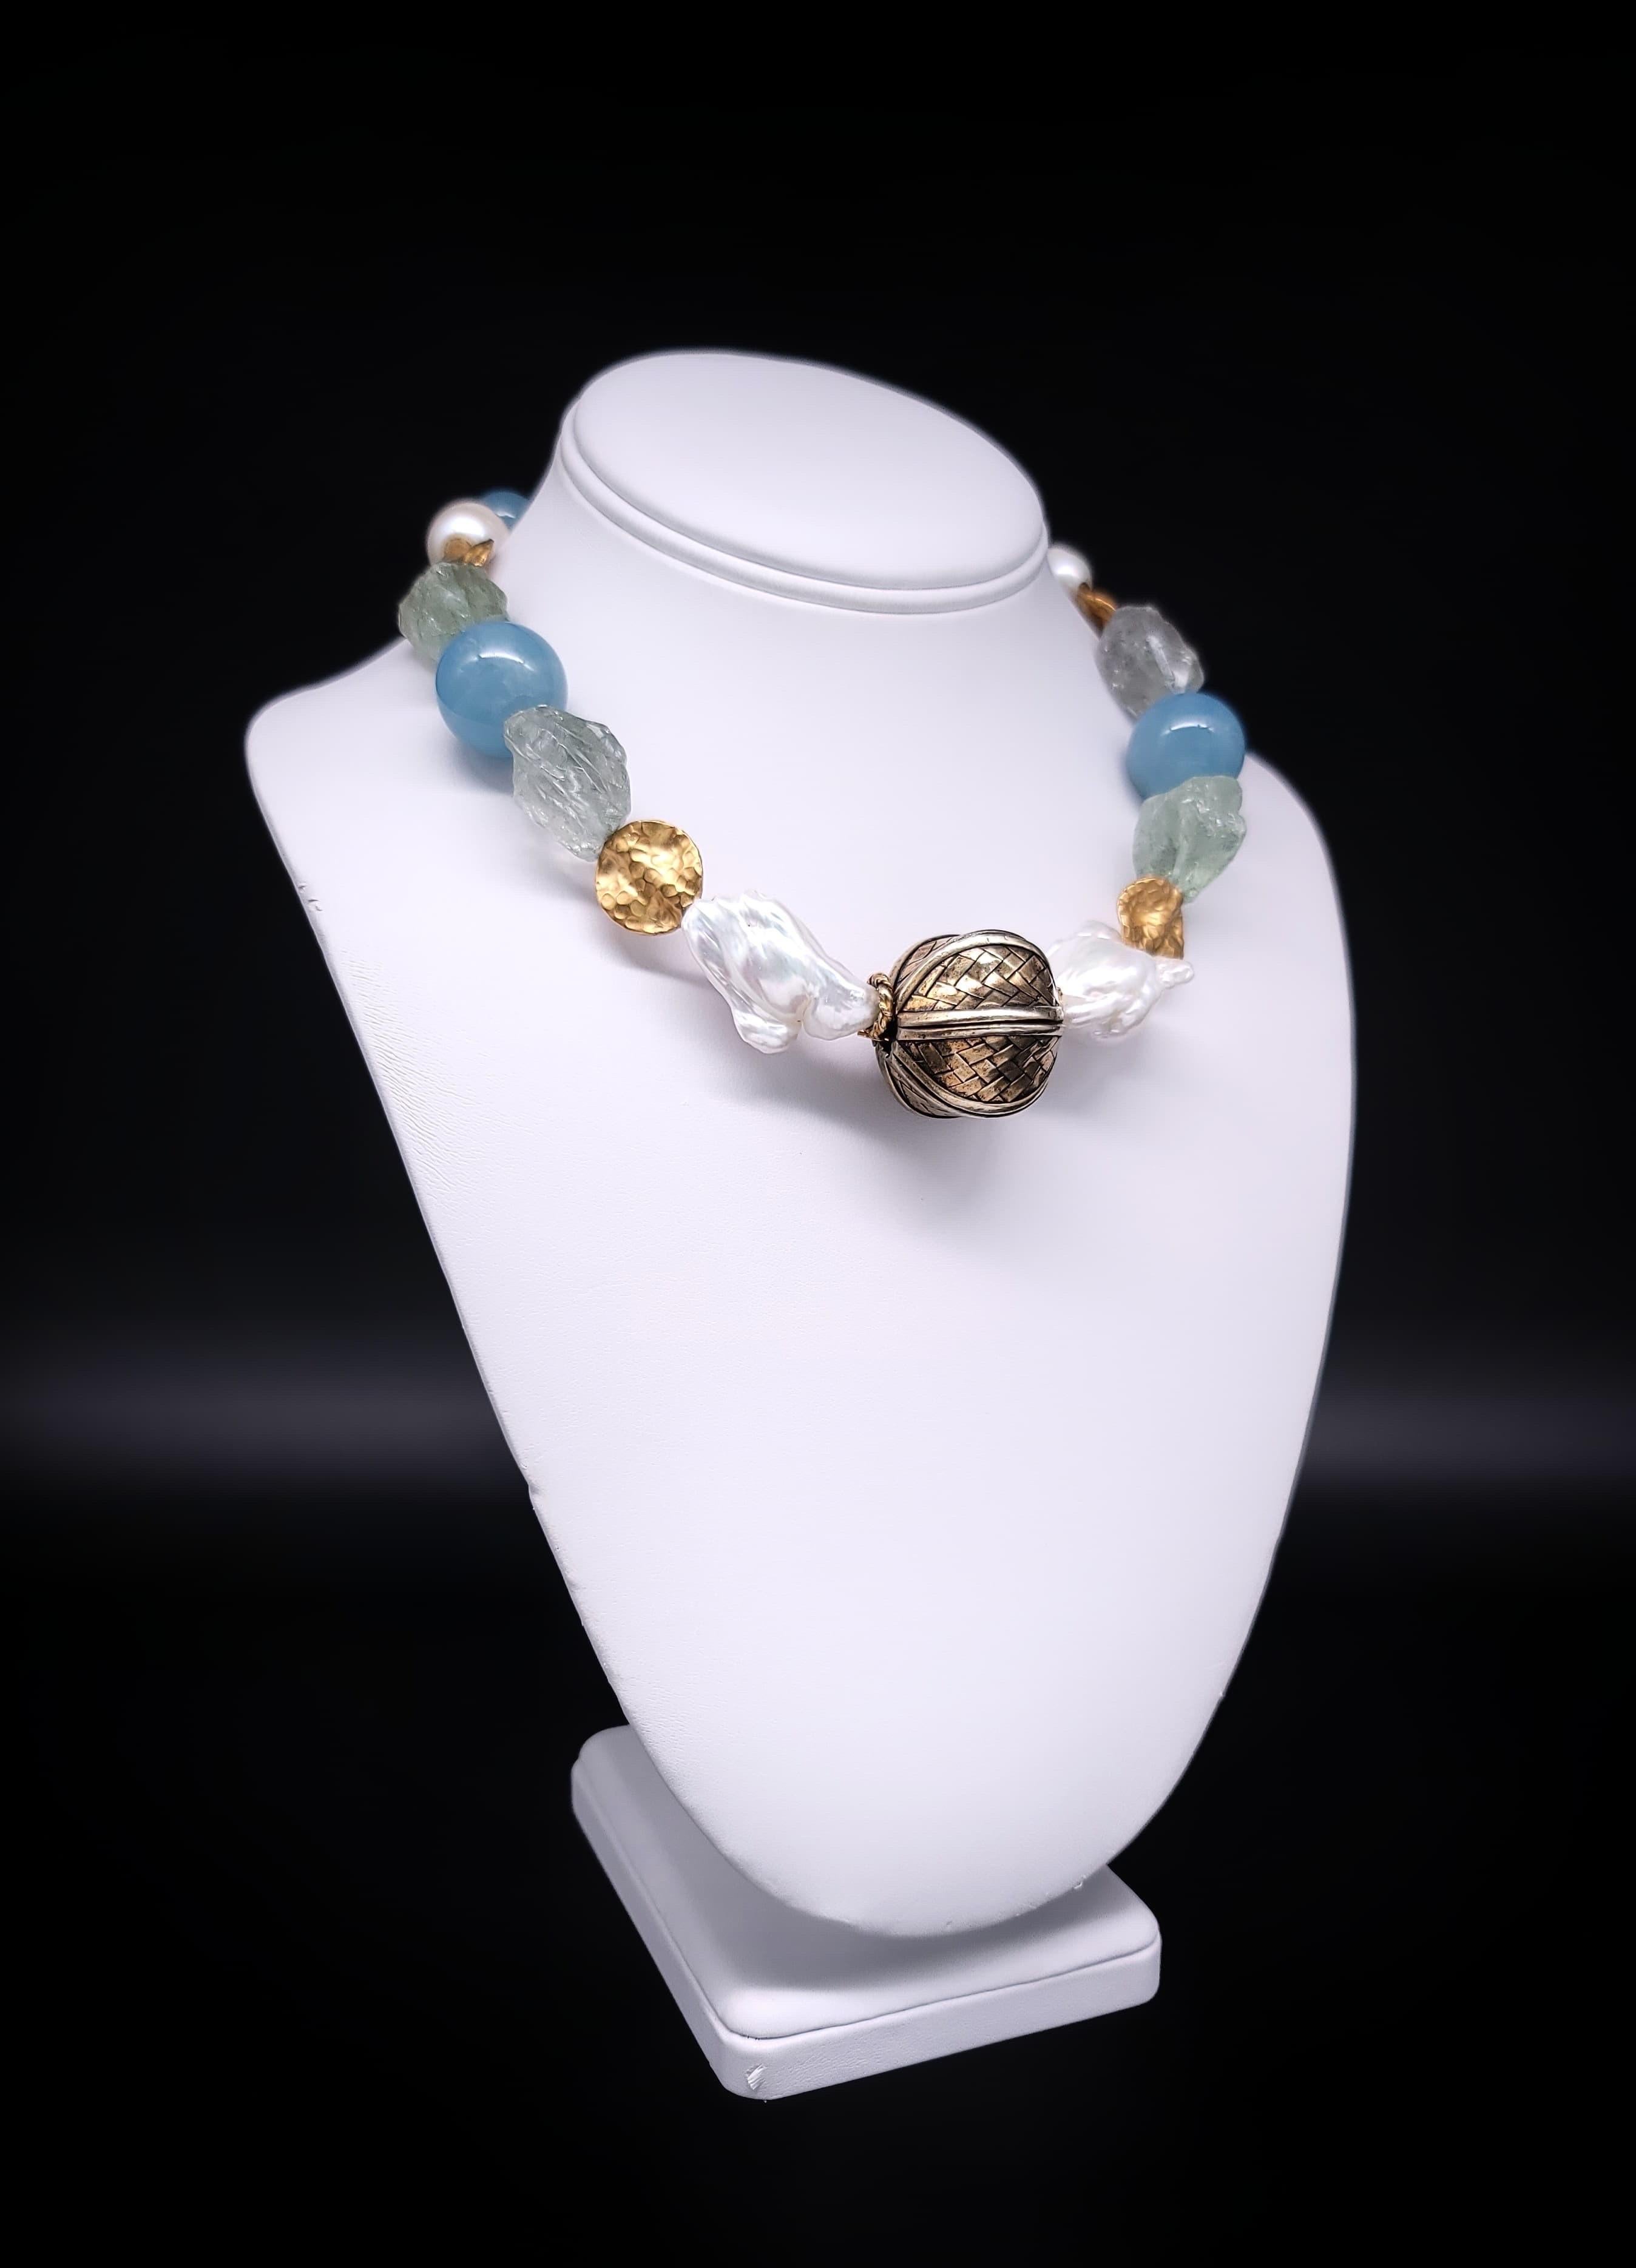 Diese mit viel Liebe zum Detail gefertigte, einzigartige Halskette ist ein Meisterwerk an Eleganz und Individualität. Das auffällige Design besticht durch eine faszinierende Mischung aus polierten 22-mm-Aquamarinperlen in verschiedenen Blautönen,